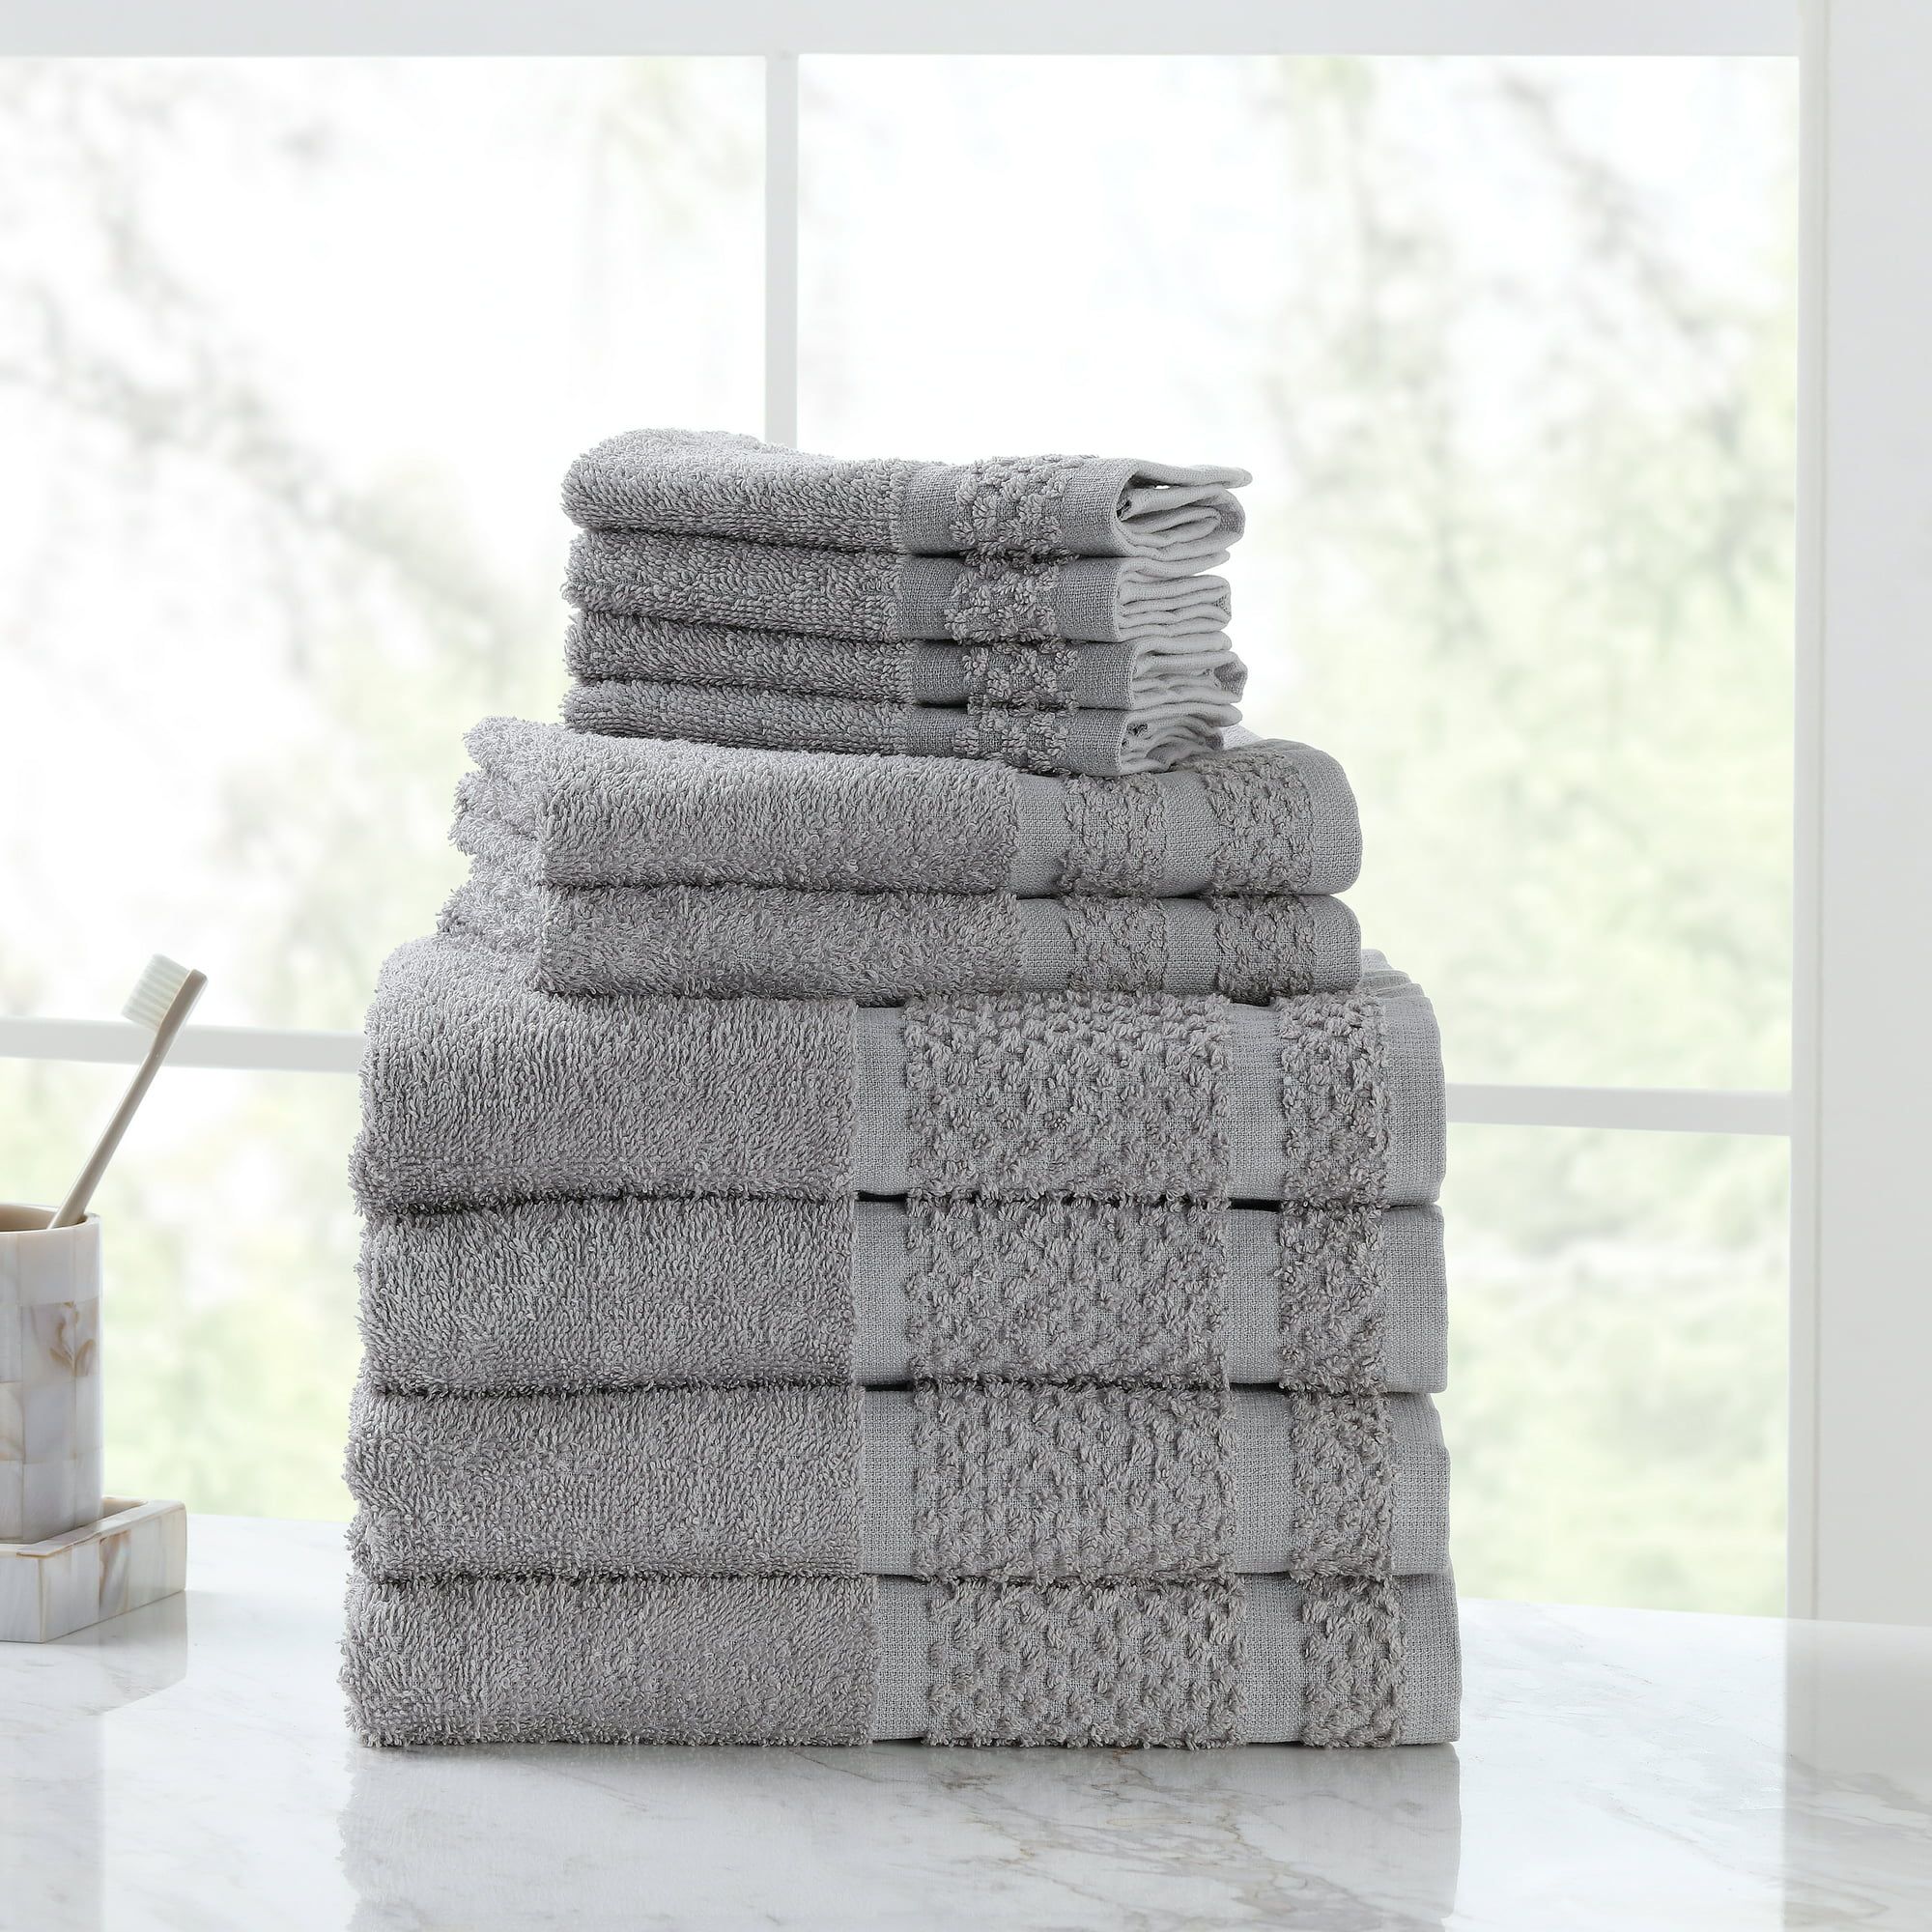 Mainstays 10 Piece Bath Towel Set with Upgraded Softness & Durability, Gray | Walmart (US)